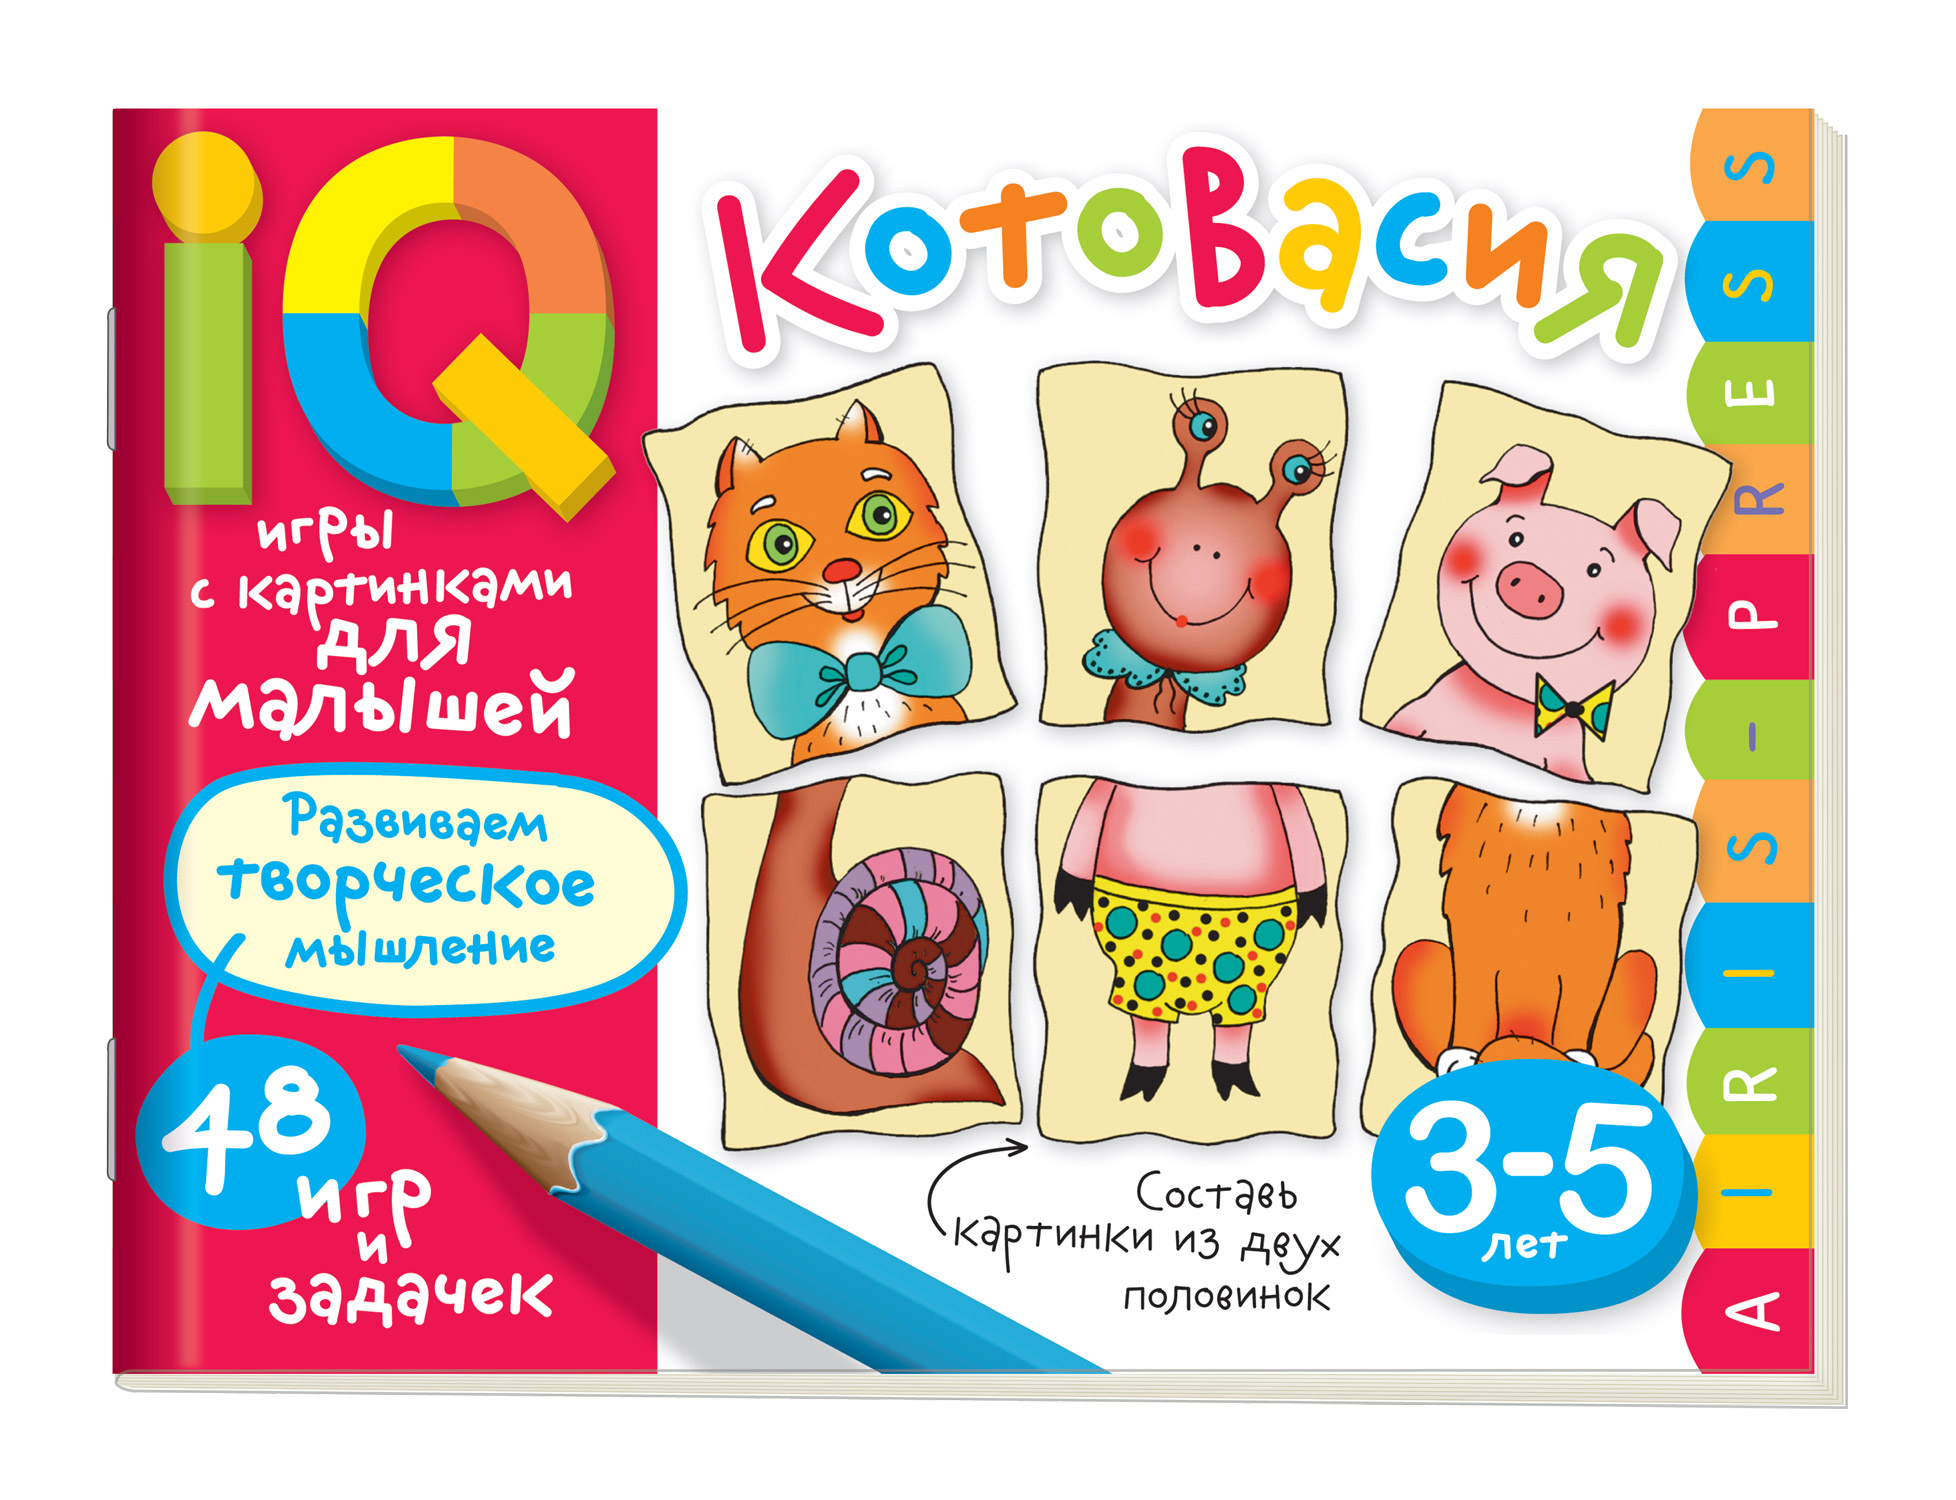 Умные игры с картинками для малышей. КотоВасия (3-5 лет)